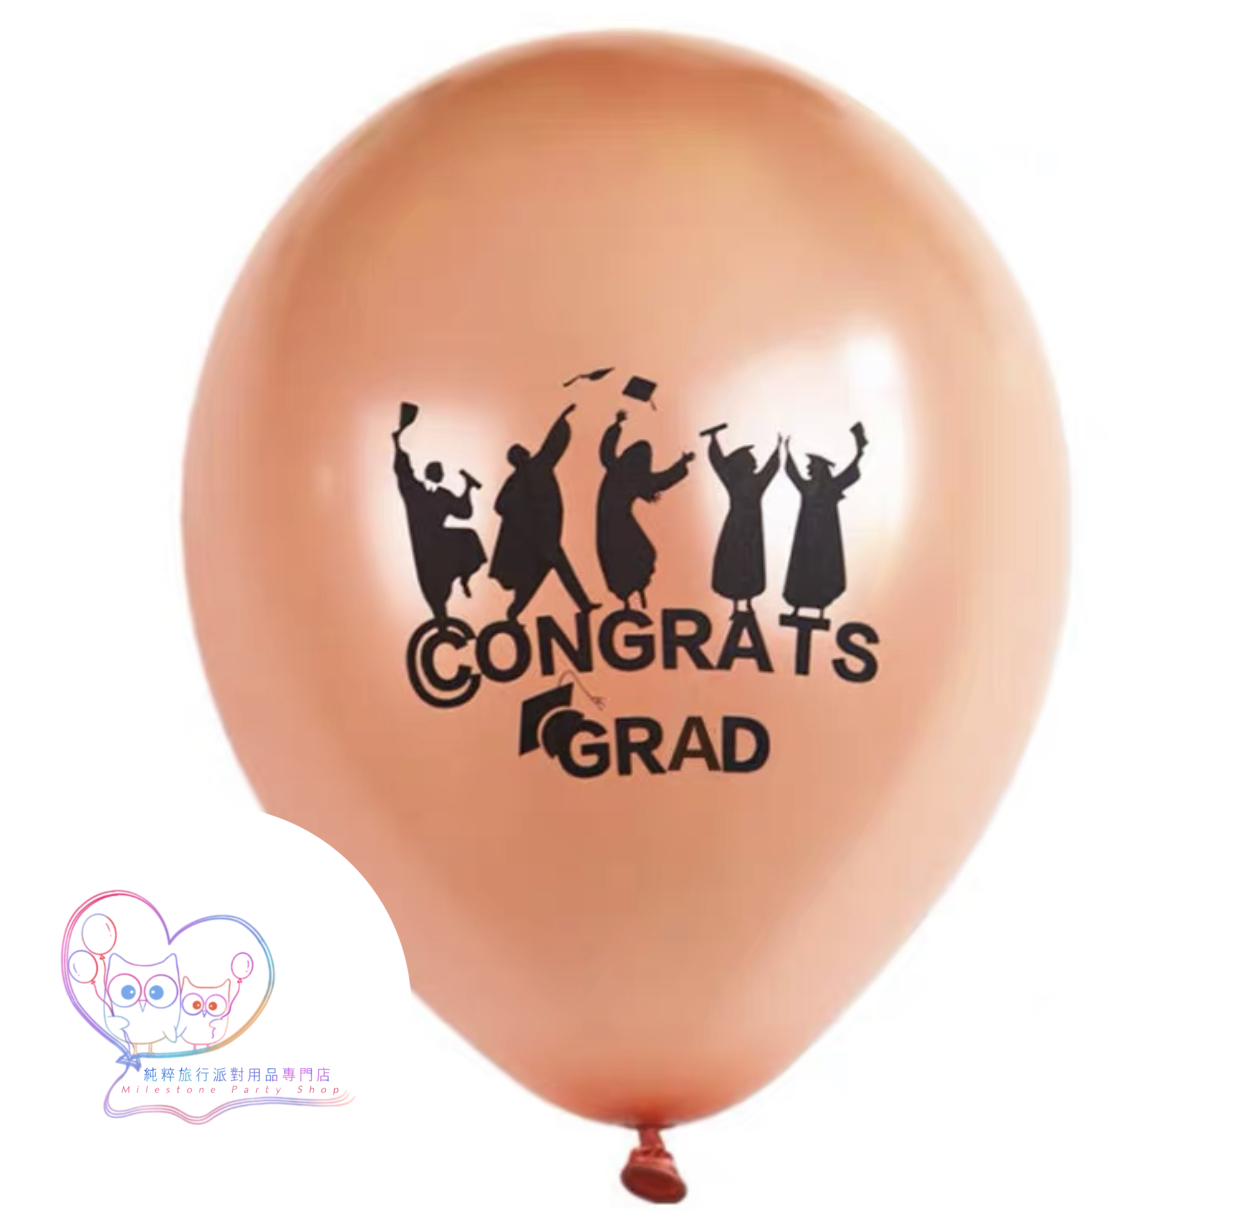 12吋乳膠氣球 (Congrats Grad) (玫瑰金色) LBG1-3